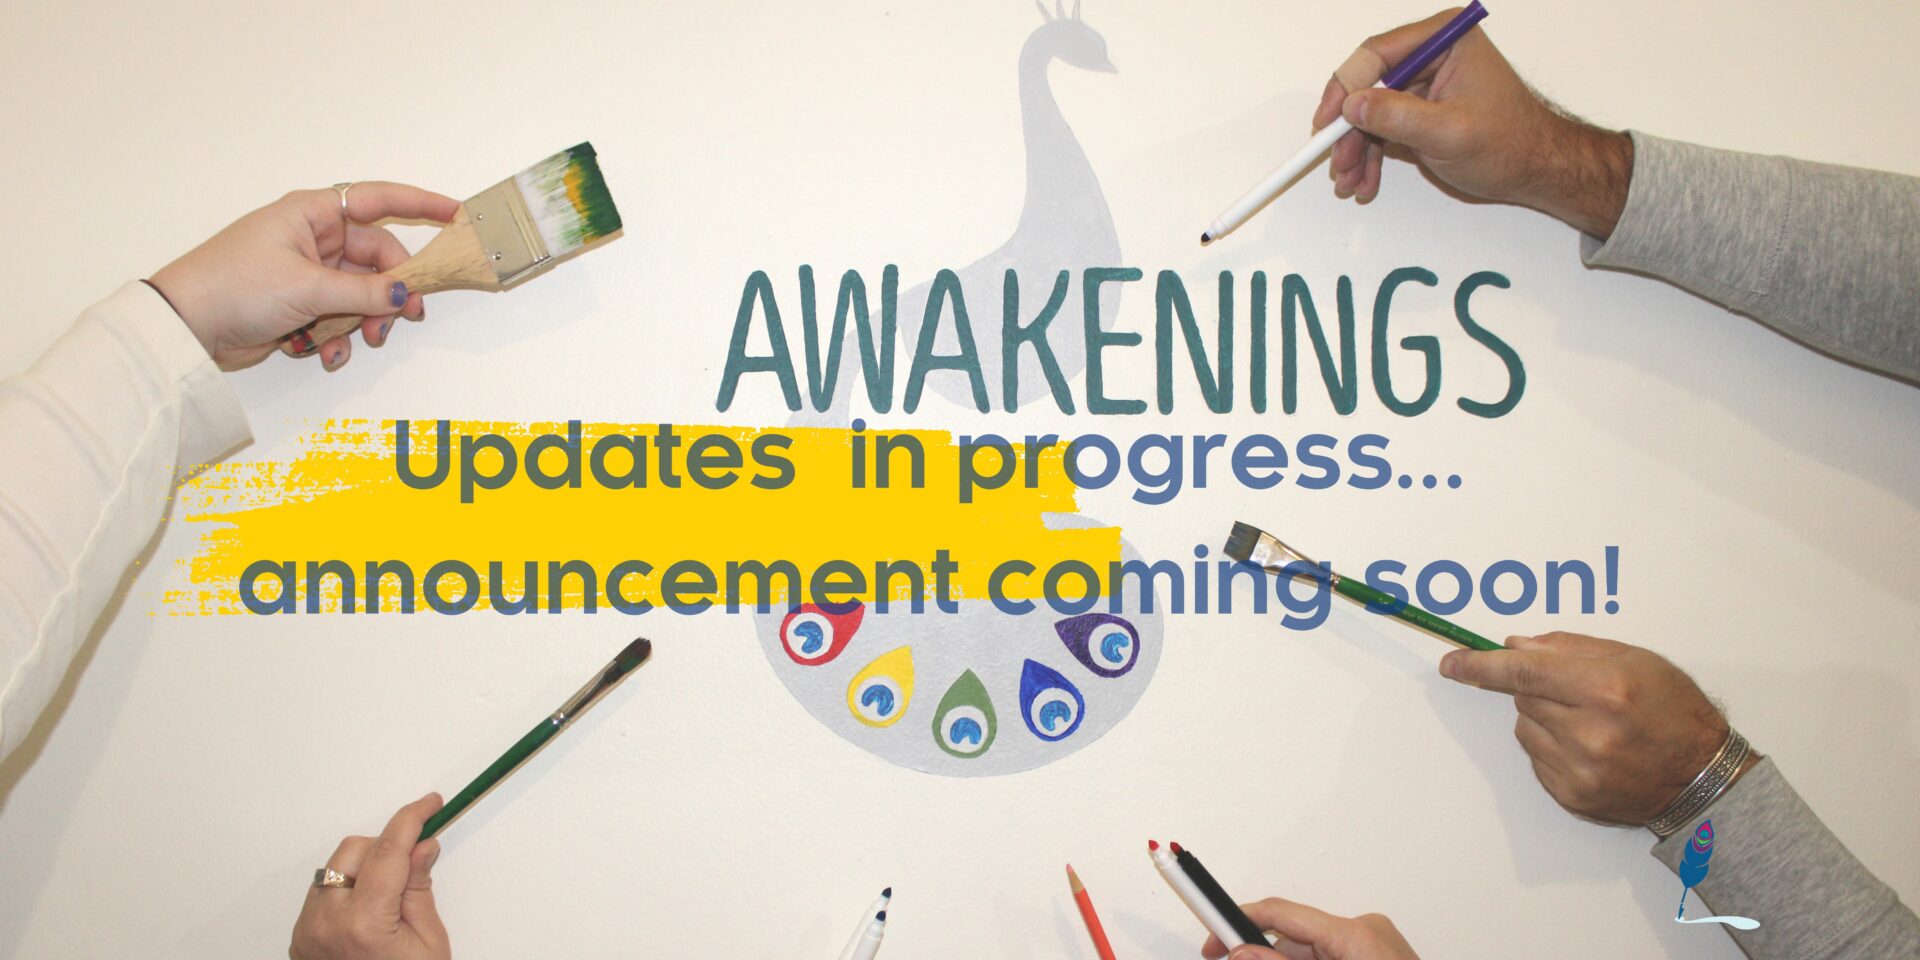 updates in progress...announcement coming soon